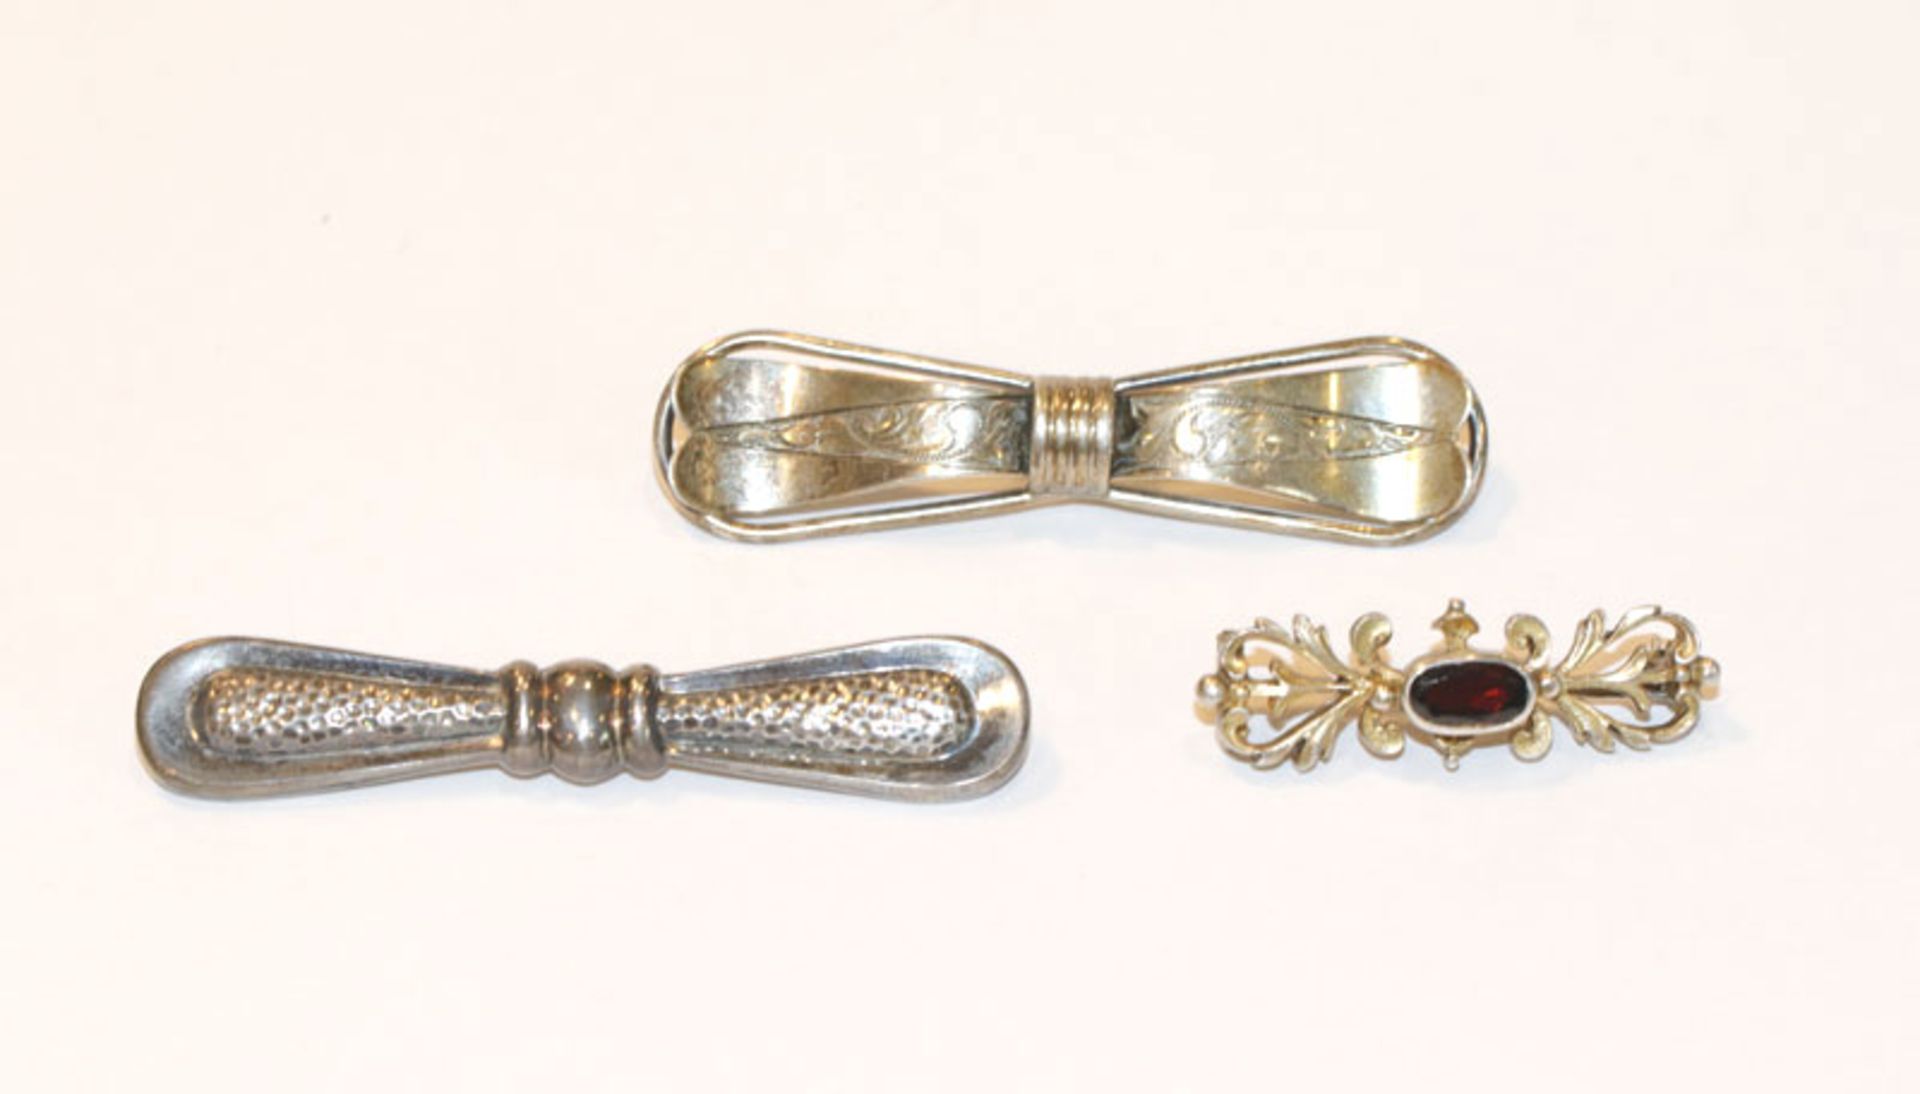 2 Silber Nadeln in Schleifenform, B 6/6,5 cm, und Silber Trachtennadel mit Granat, B 3,5 cm